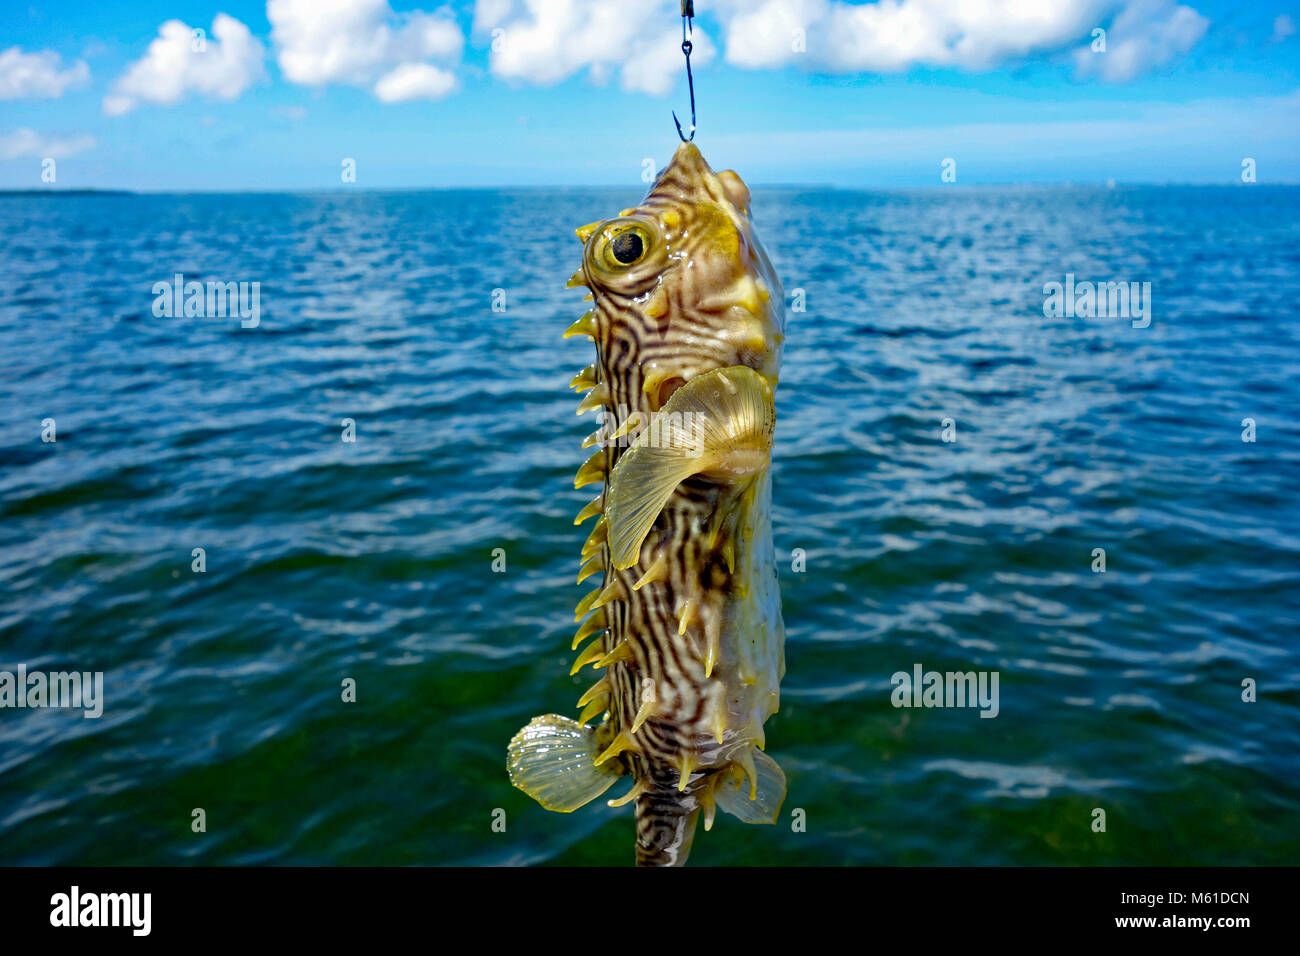 Burrfish or Puffer fish or pufferfish found in Florida, USA Stock Photo